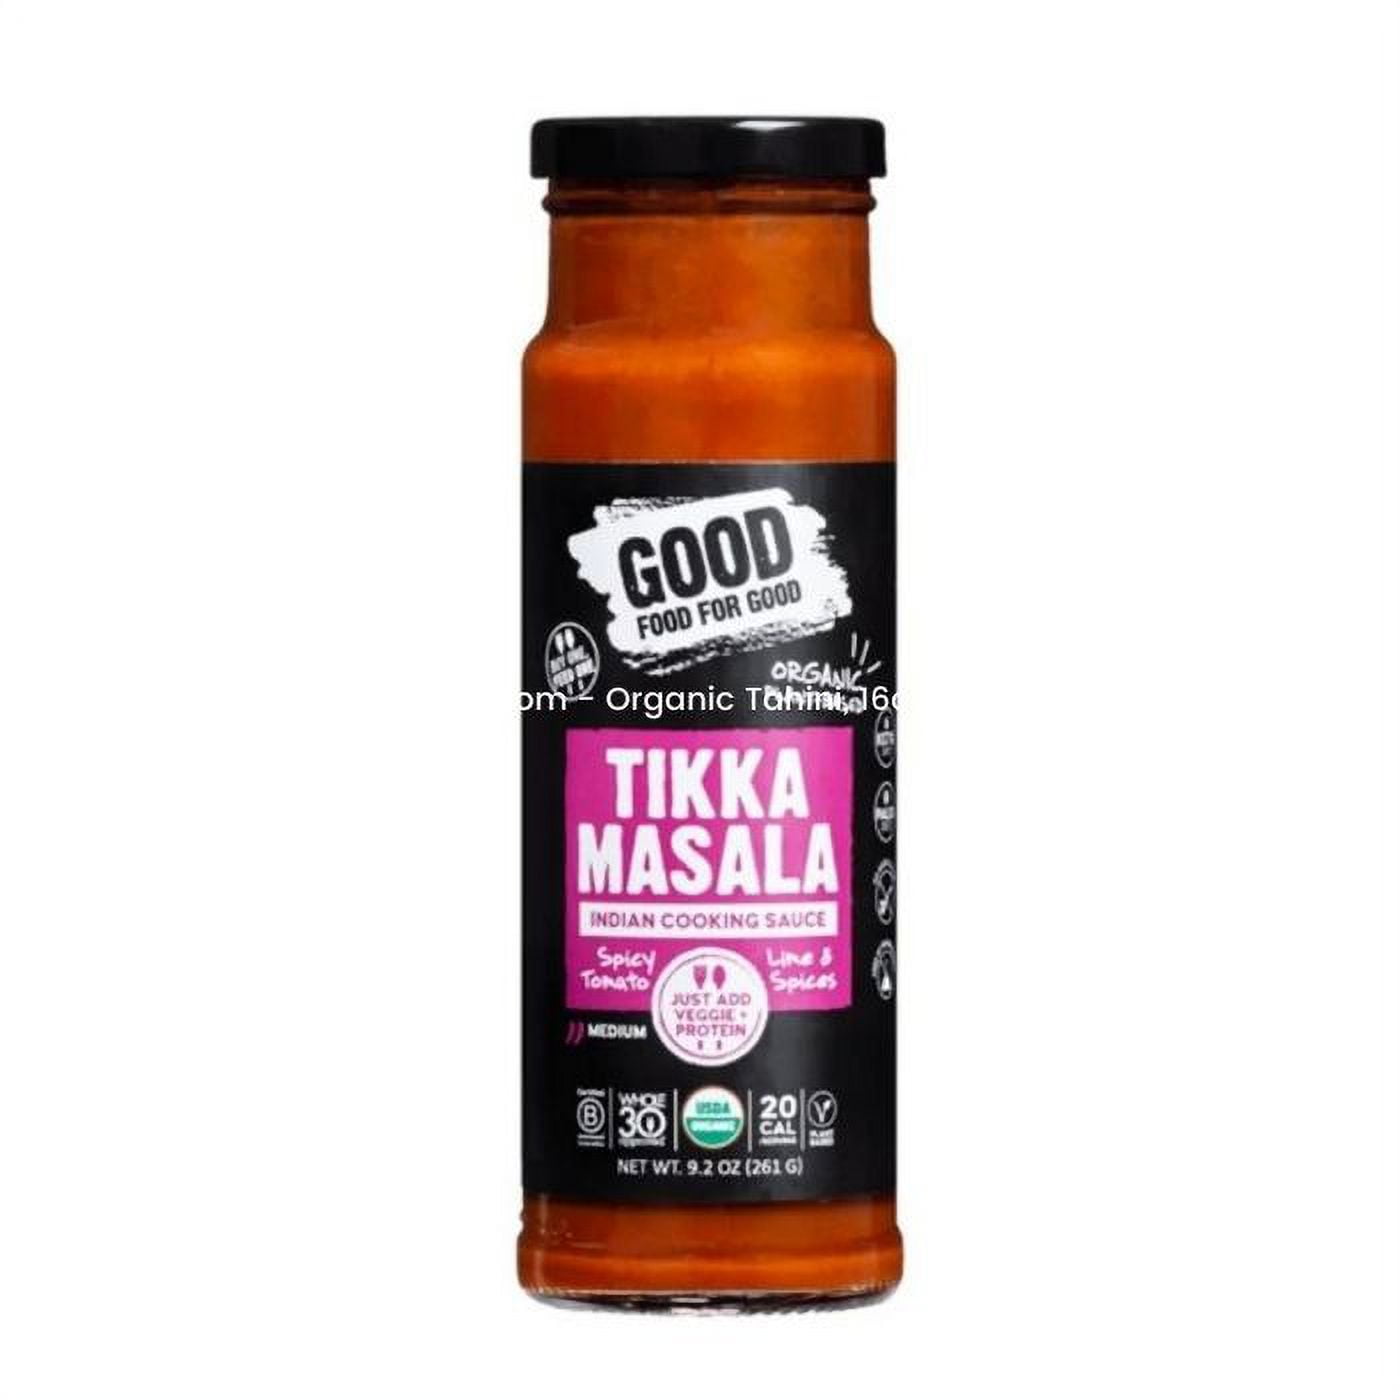 Good Food For Good Organic Tikka Masala Sauce 9.2 oz